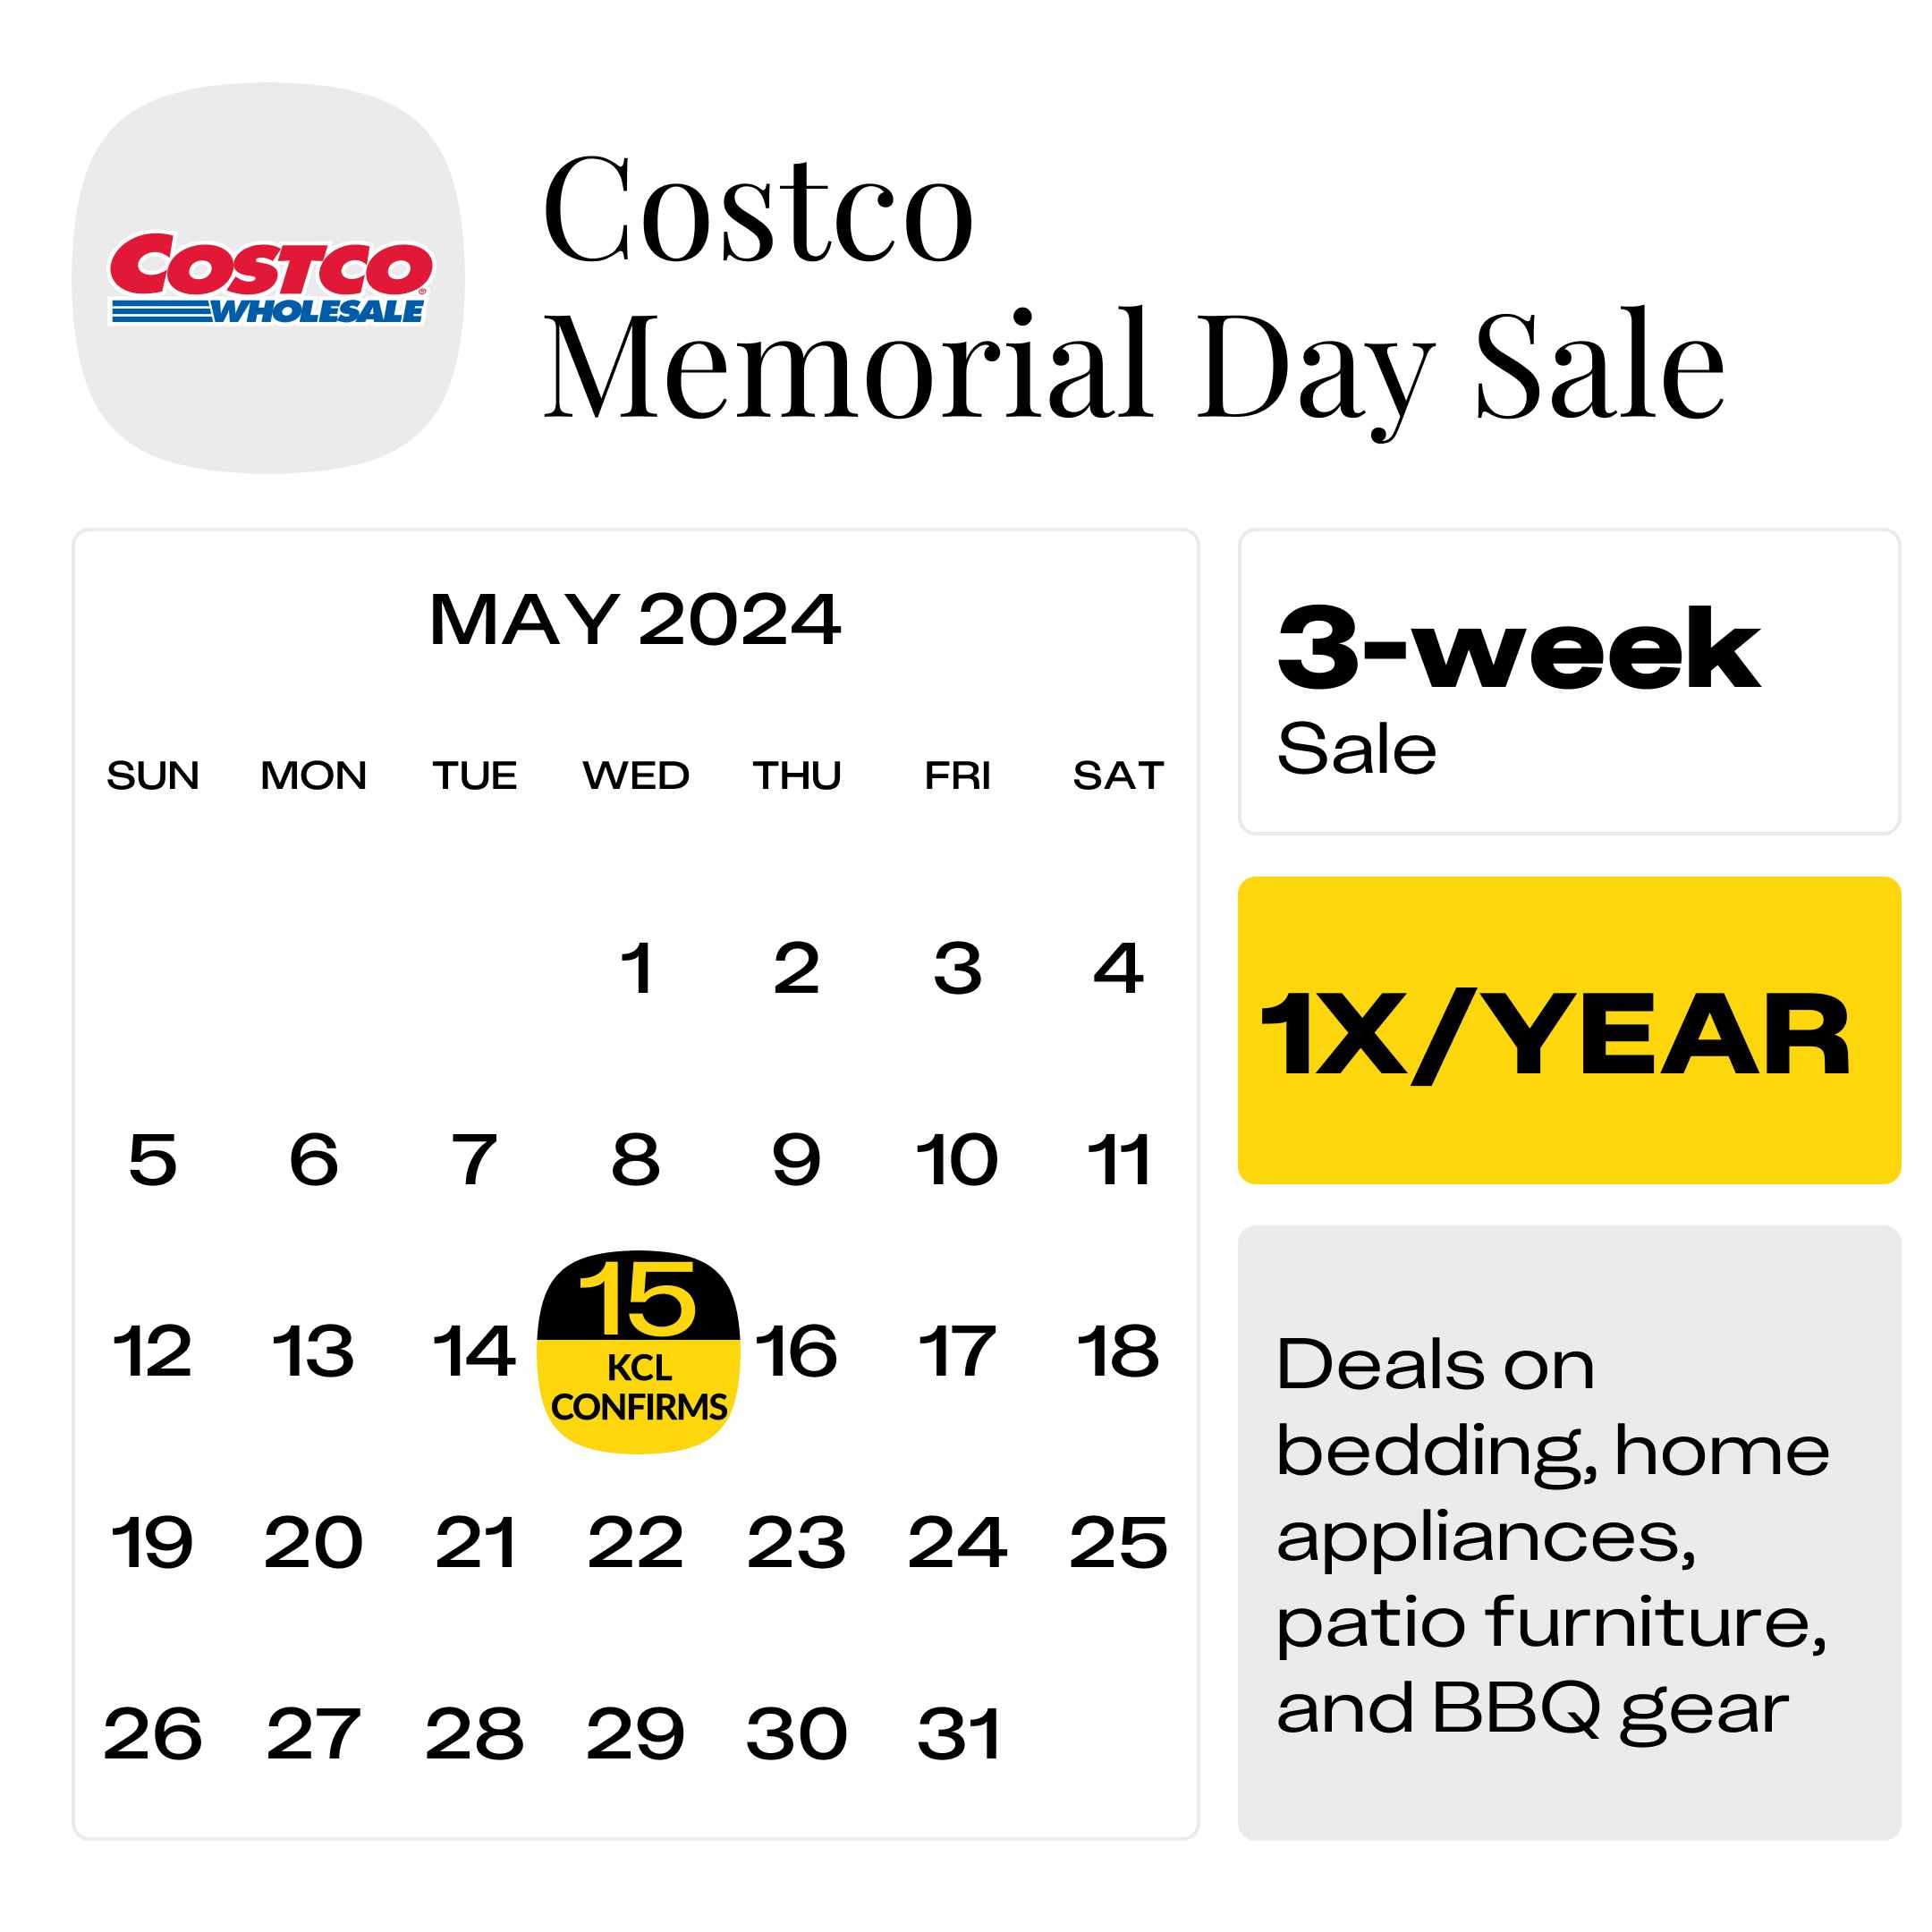 Costco-Memorial-Day-Sale